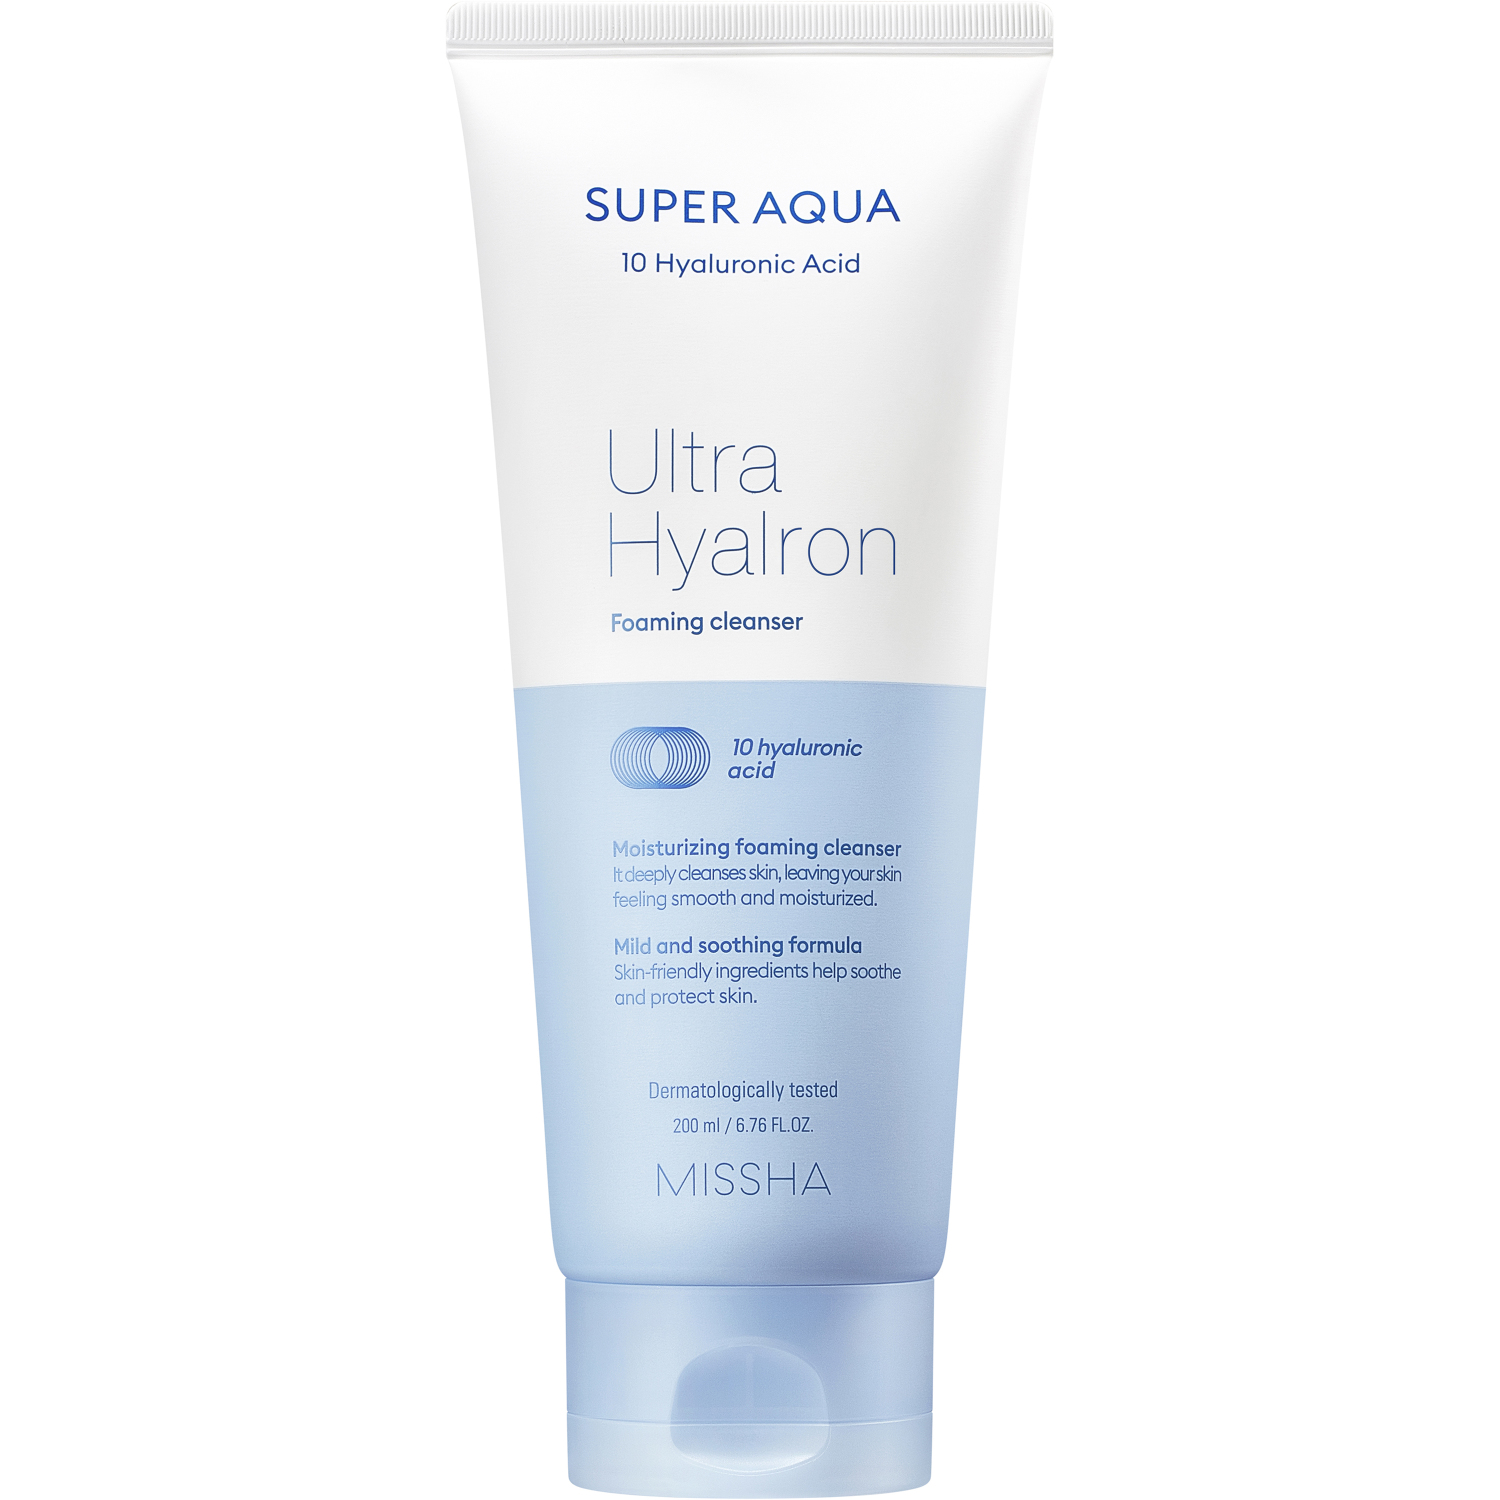 Пенка Missha Super Aqua Ultra Hyalron для умывания и снятия макияжа, 200 мл